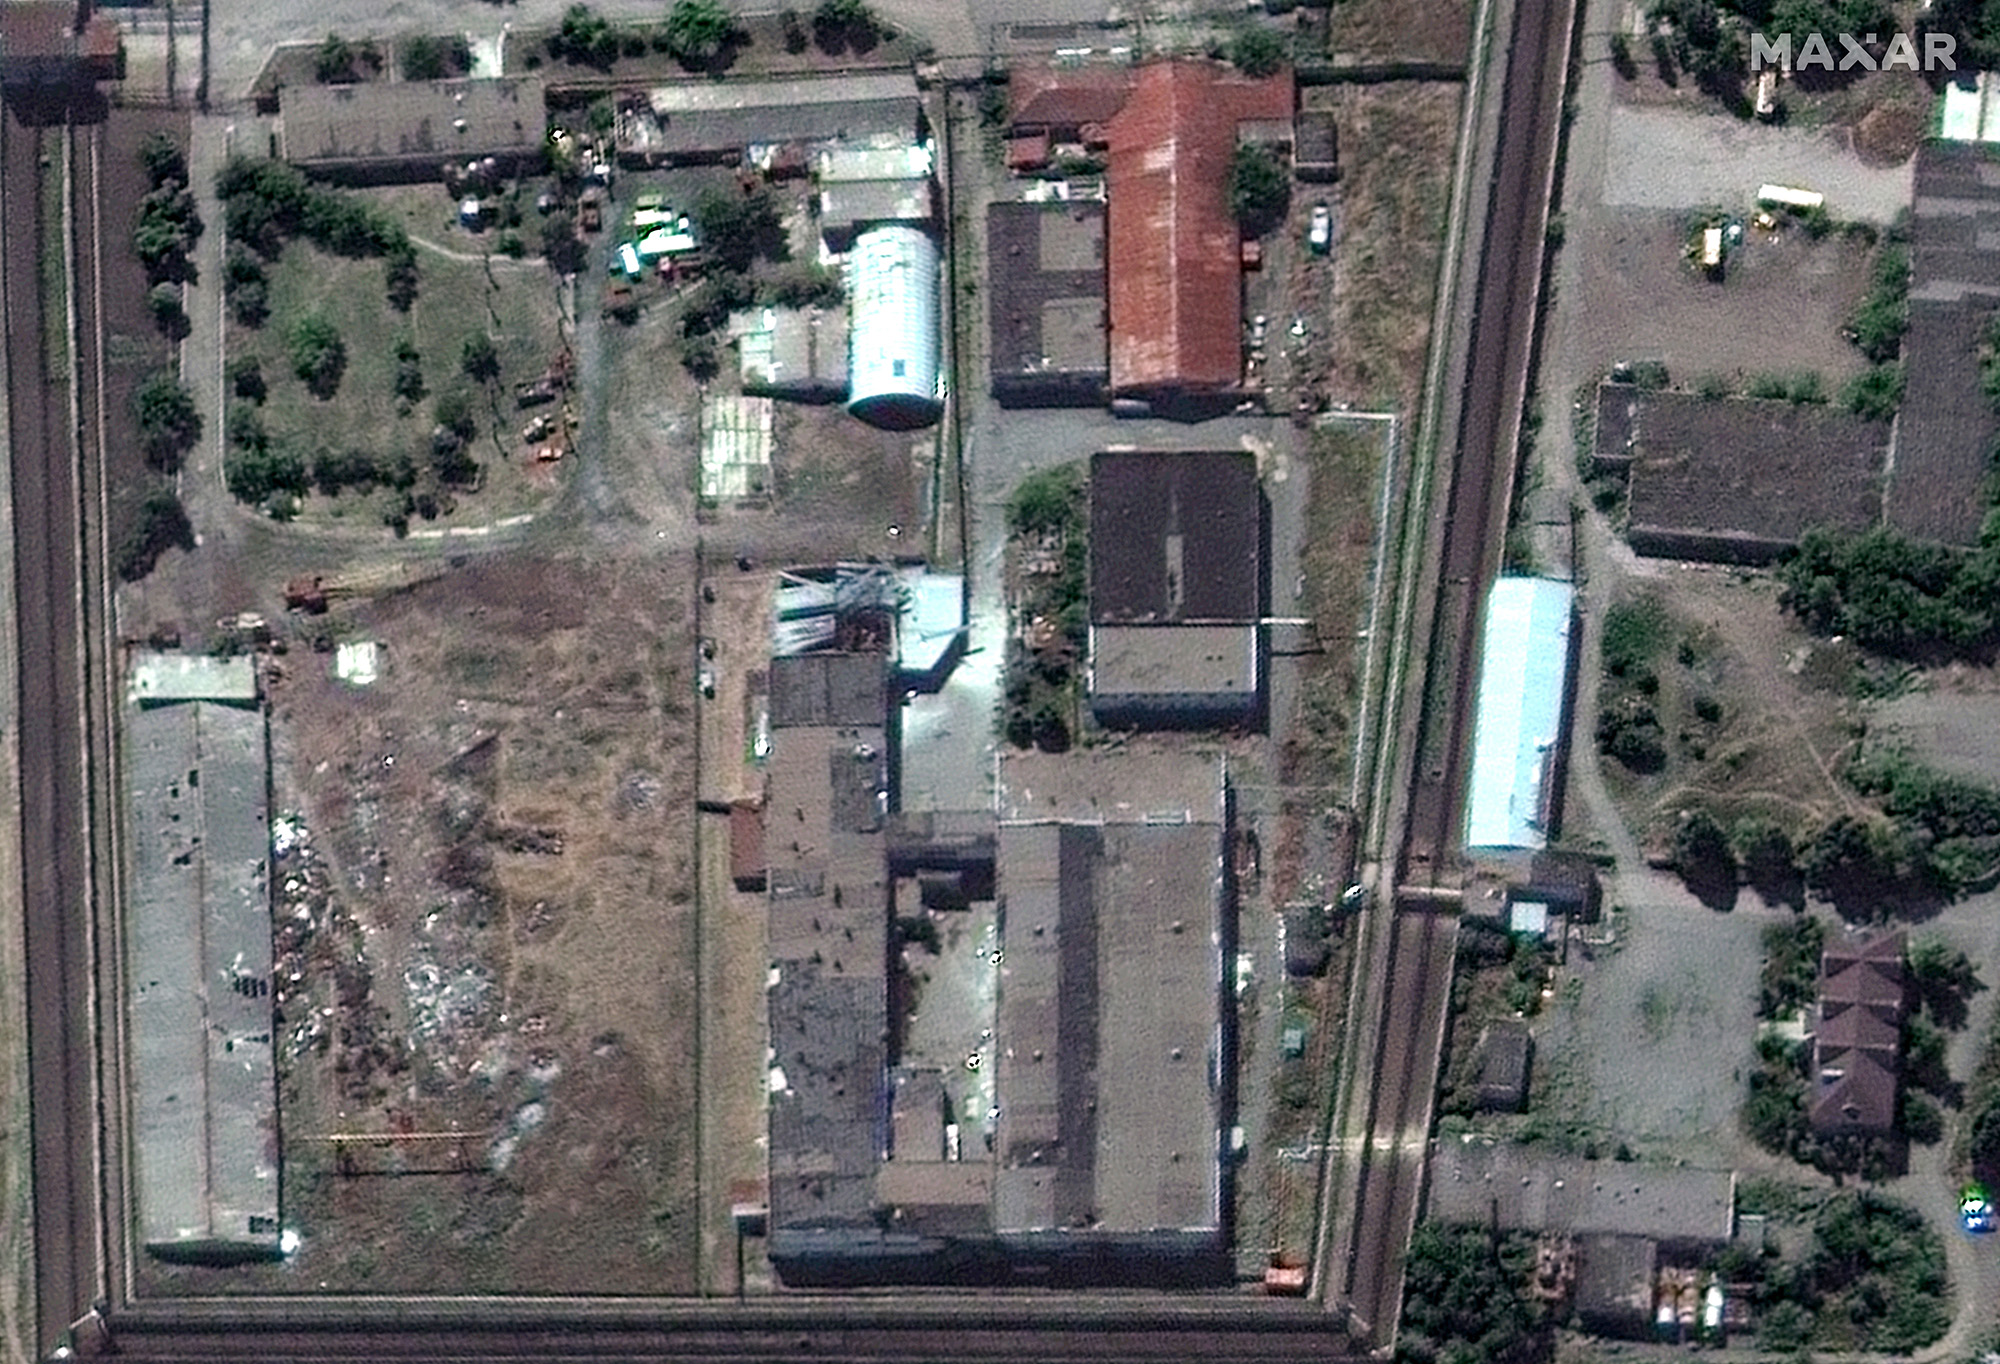 سجن أولينيفكا في دونيتسك شوهد في صورة أقمار صناعية قدمتها شركة ماكسار تكنولوجيز في 30 يوليو / تموز ، في أعقاب الهجوم على المنشأة.